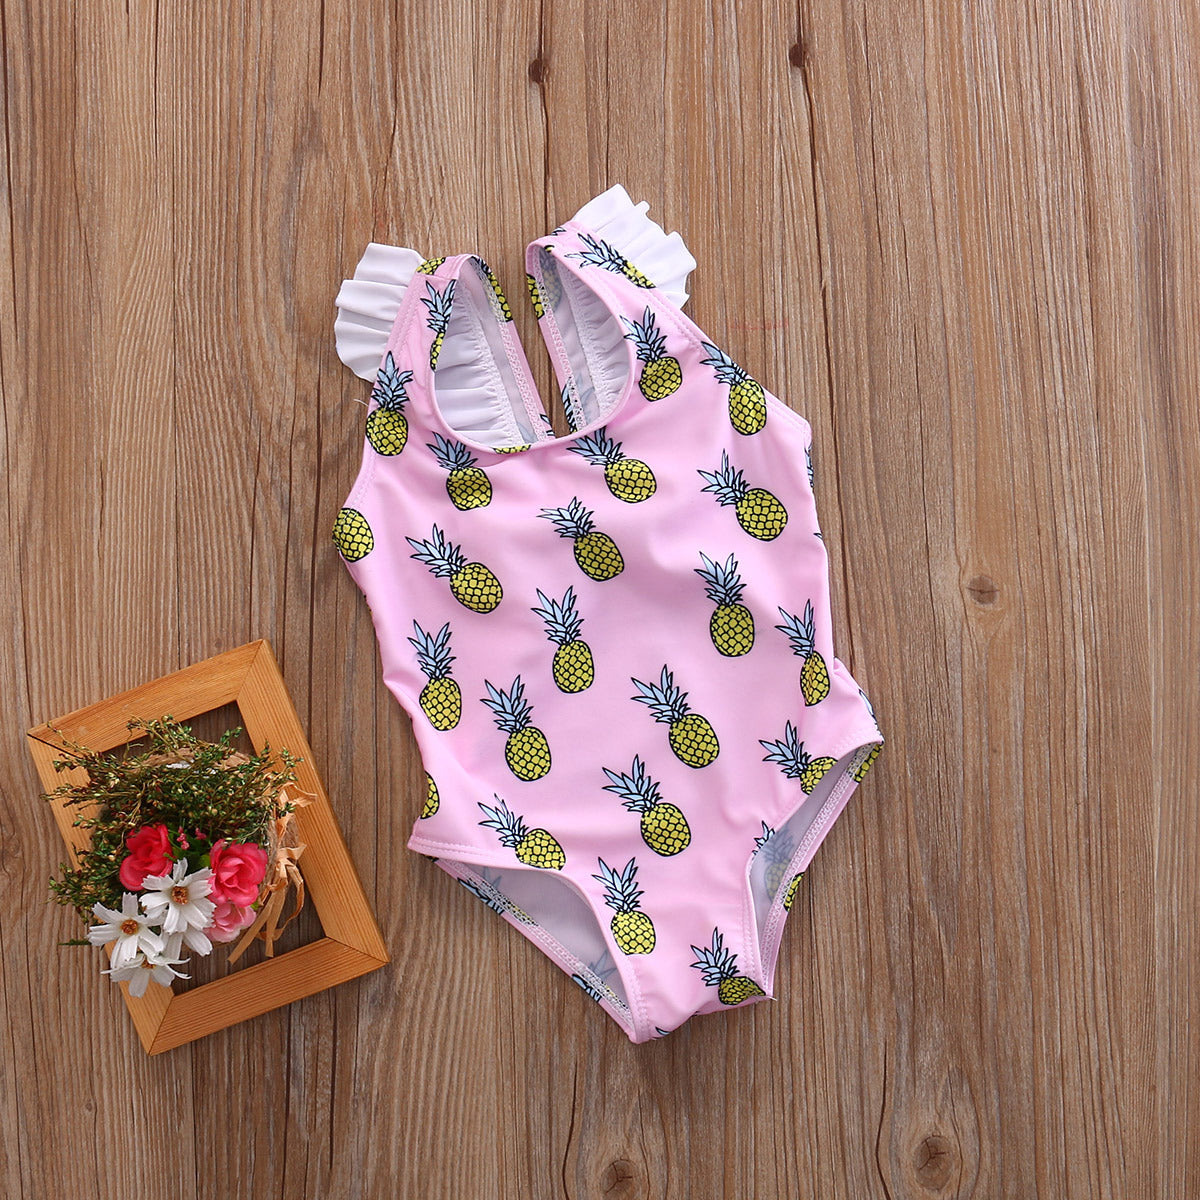 Pineapple baby swimwear